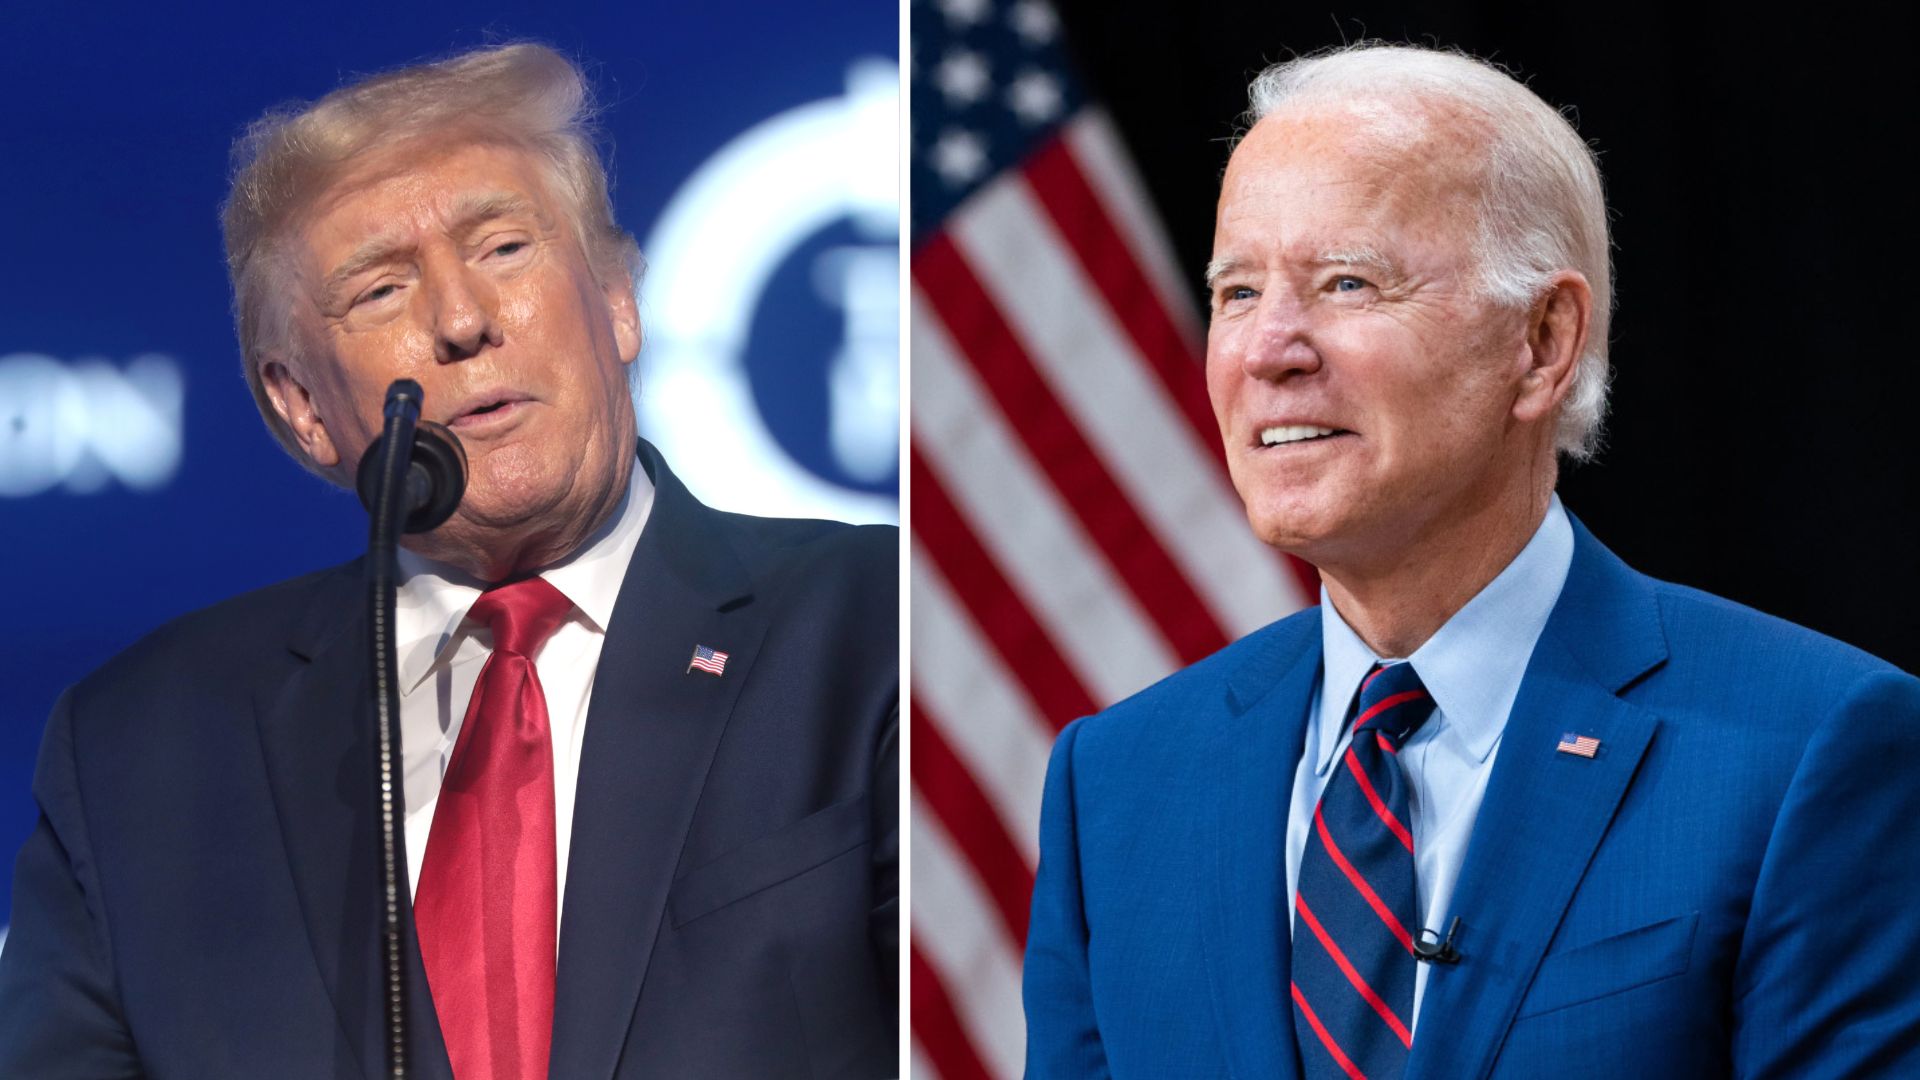 Nos EUA, pesquisa mostra eleitorado dividido entre abordagens de Biden e Trump